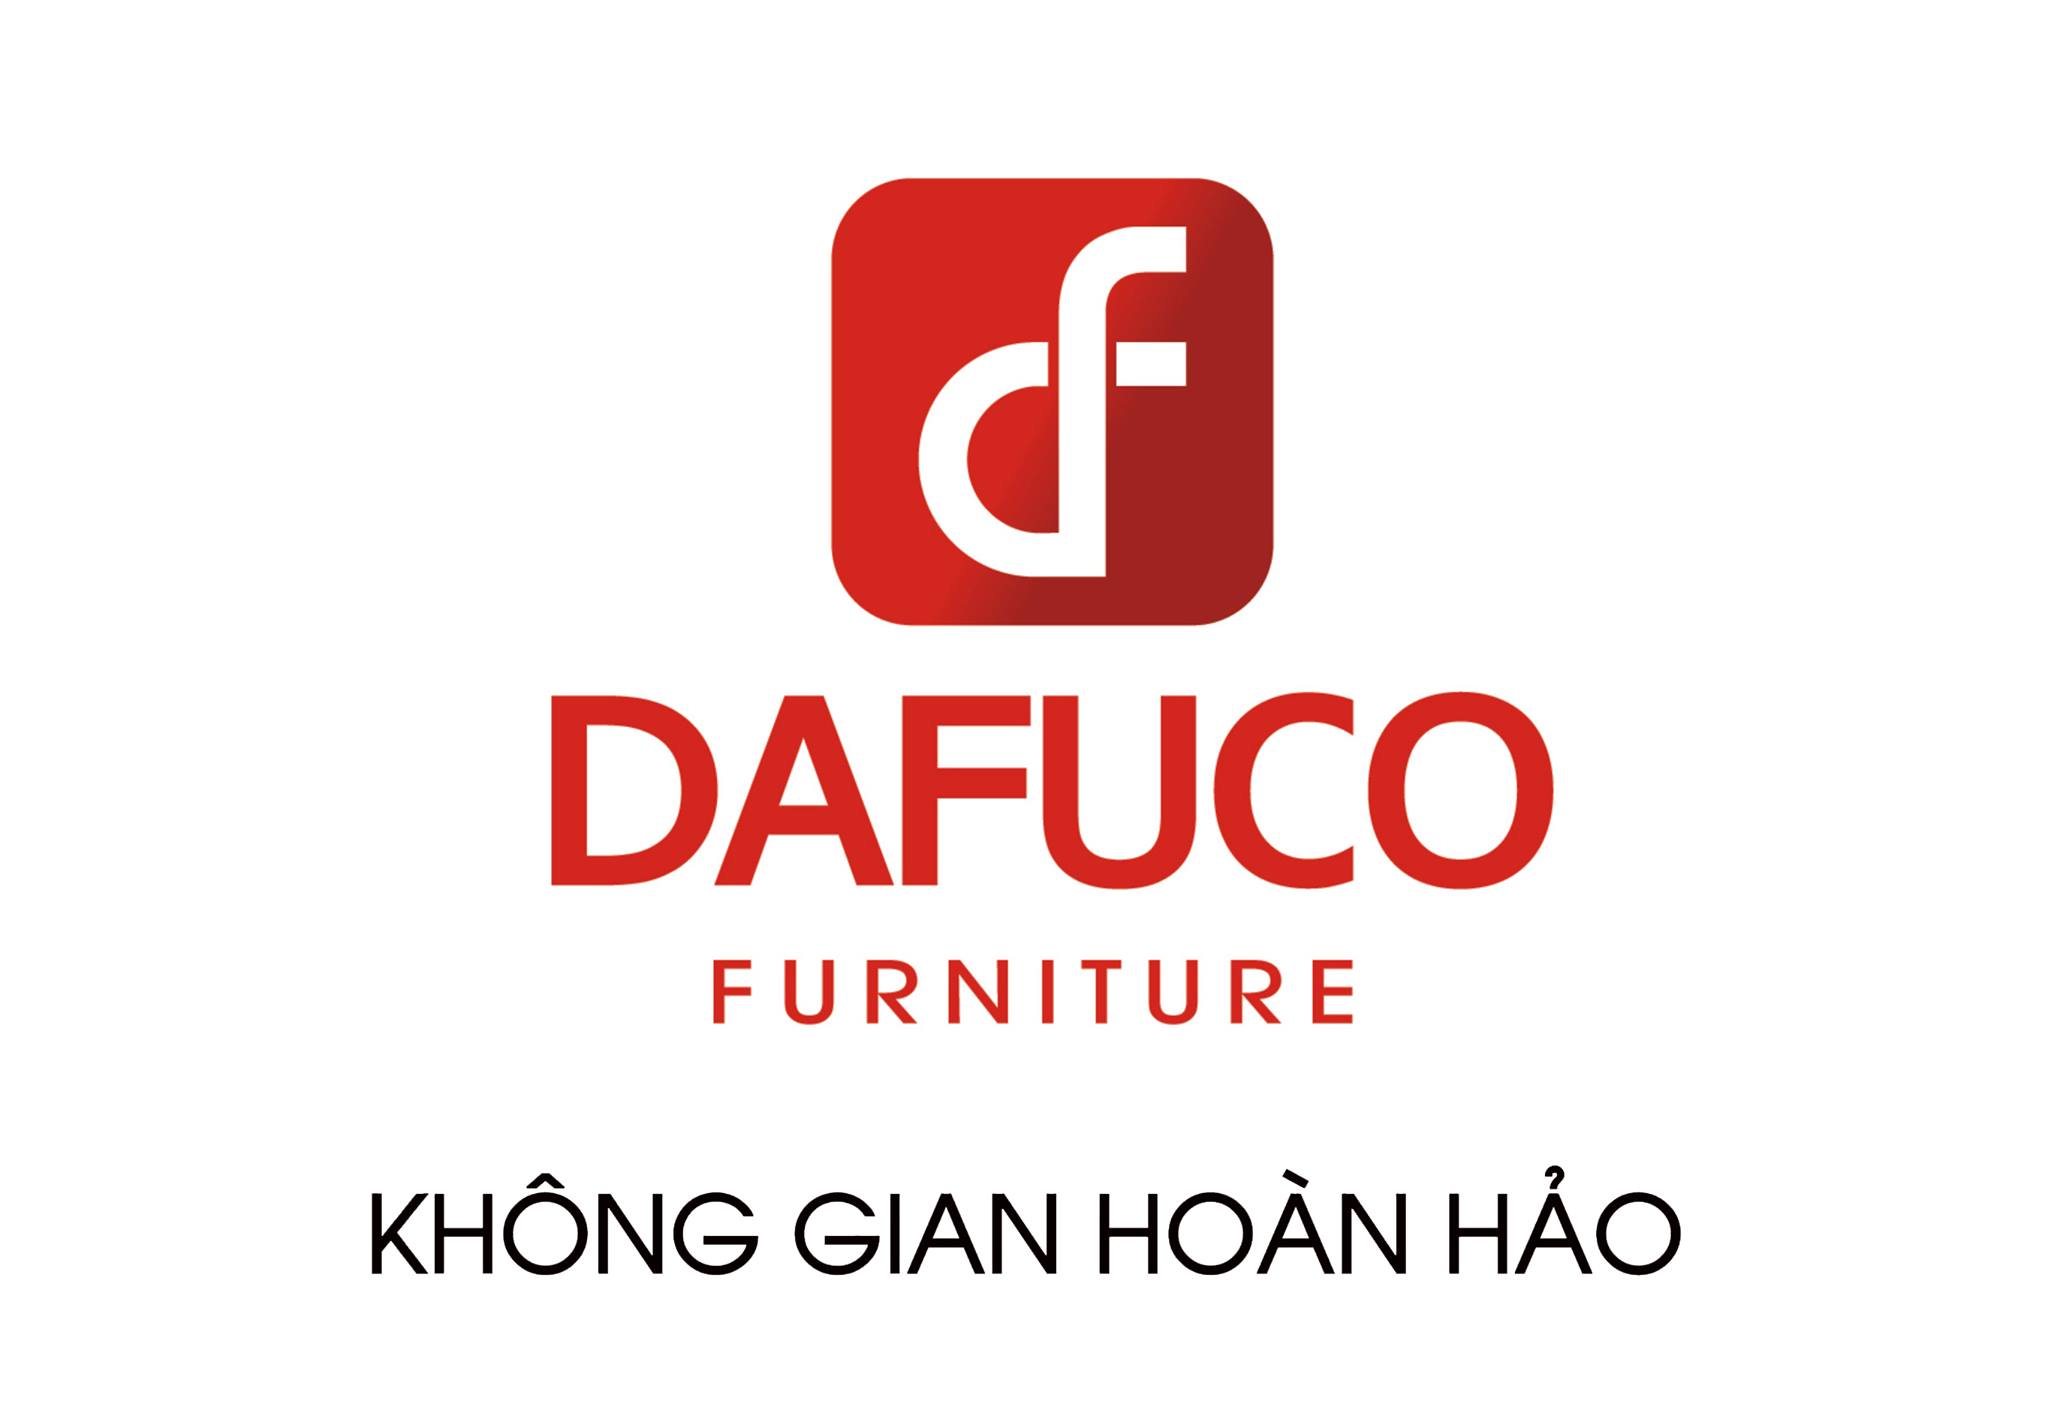 Dafuco Furniture - thương hiệu đến từ chất lượng. Tất cả các sản phẩm được làm từ những nguyên liệu tốt nhất, cùng với sự kết hợp tuyệt vời của kiến ​​trúc và nghệ thuật, mang lại cho bạn những sản phẩm nội thất tốt nhất.